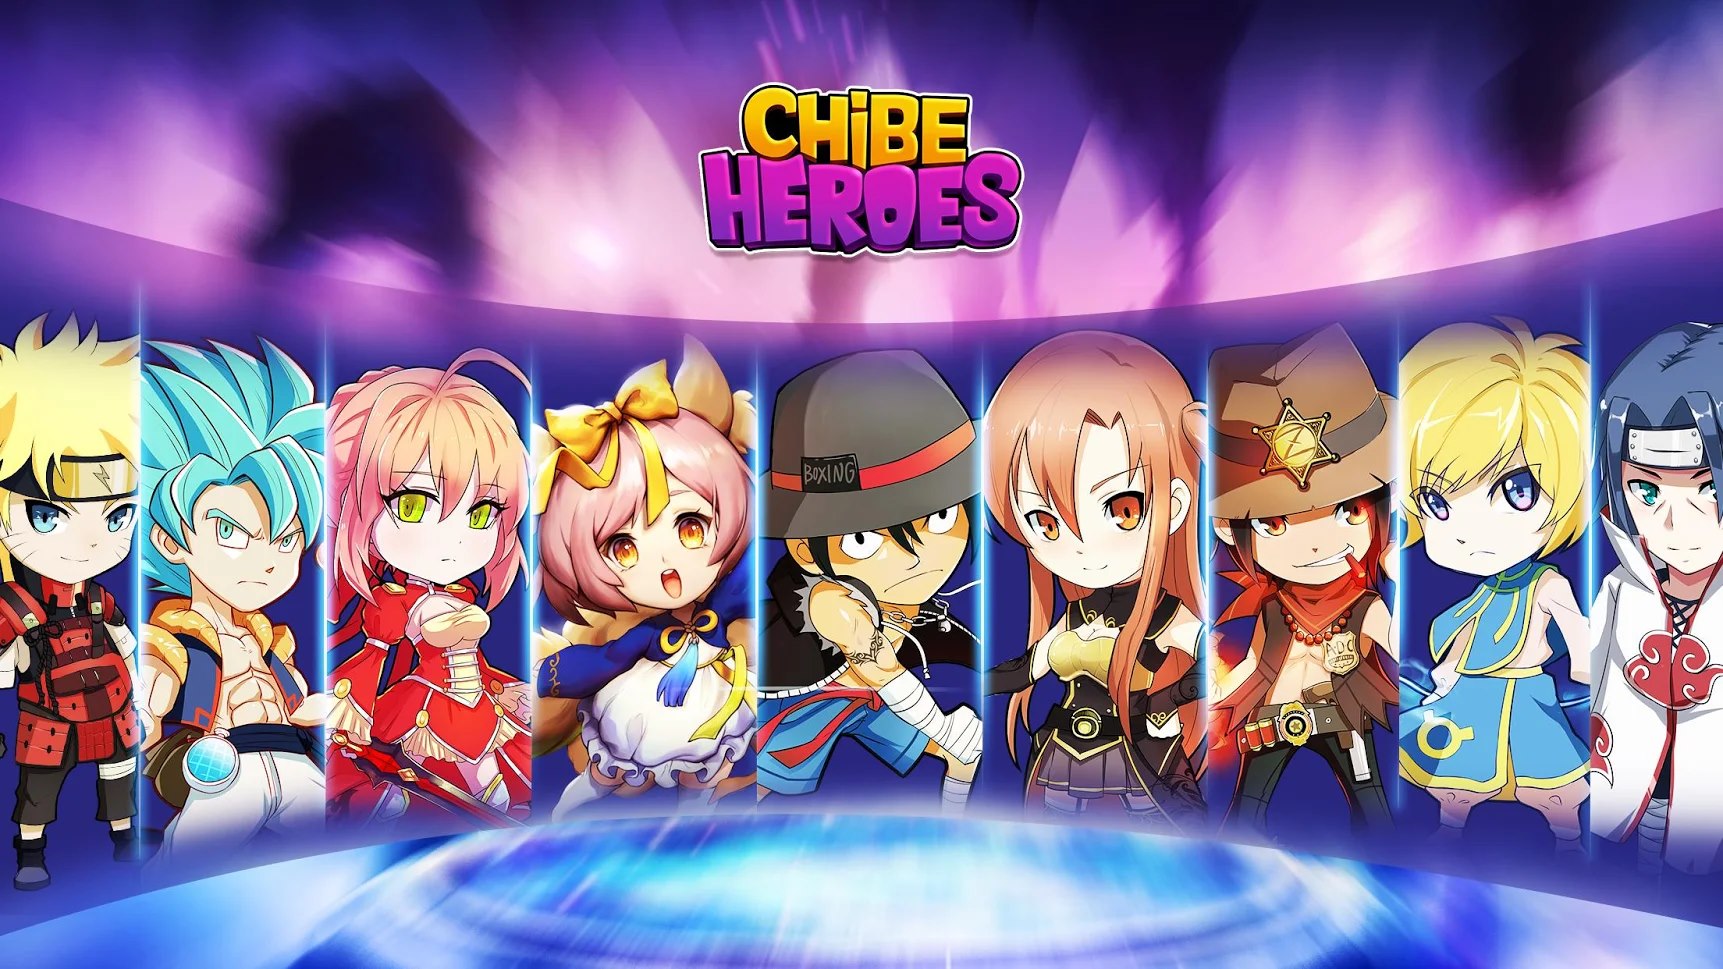 Chibi Heroes - Game hành động chibi
Với game Chibi Heroes, bạn sẽ được thỏa sức tung hoành trong thế giới hành động của các siêu nhân chibi. Game được thiết kế với đồ họa chibi vô cùng đẹp mắt cùng hệ thống gameplay vô cùng độc đáo. Bạn có thể trang bị cho nhân vật của mình nhiều kỹ năng và vũ khí khác nhau để hoàn thành nhiều nhiệm vụ thú vị.